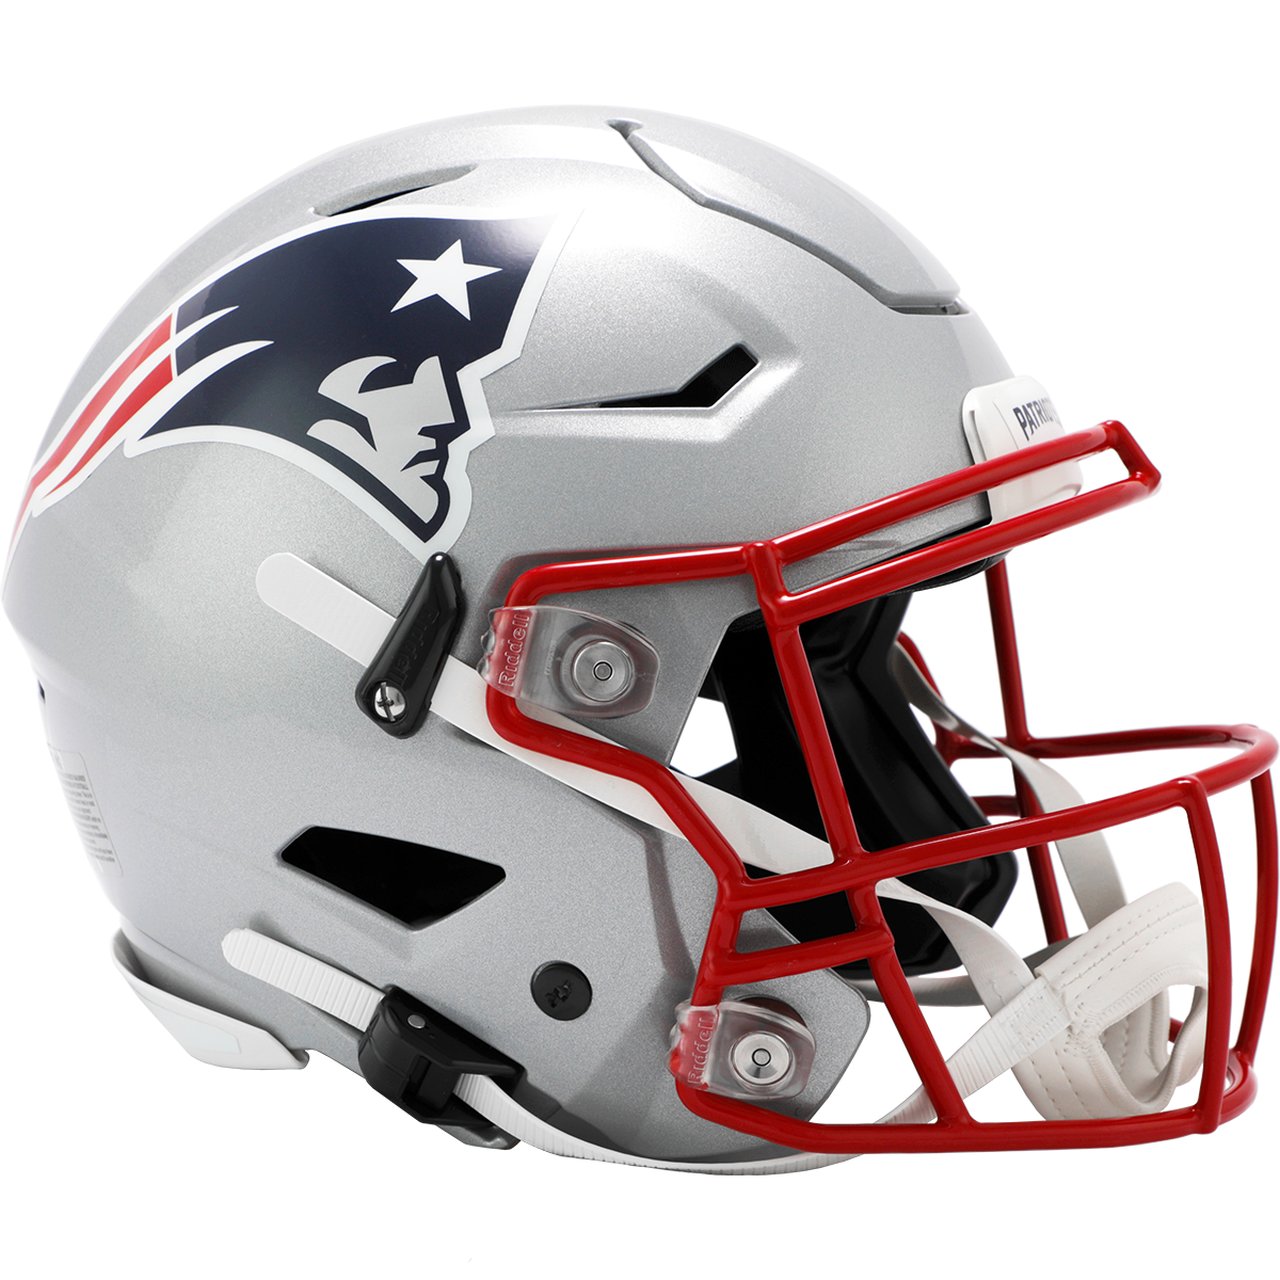 Riddell NFL Buffalo Bills Speed Authentic Football Helmet Red, Medium